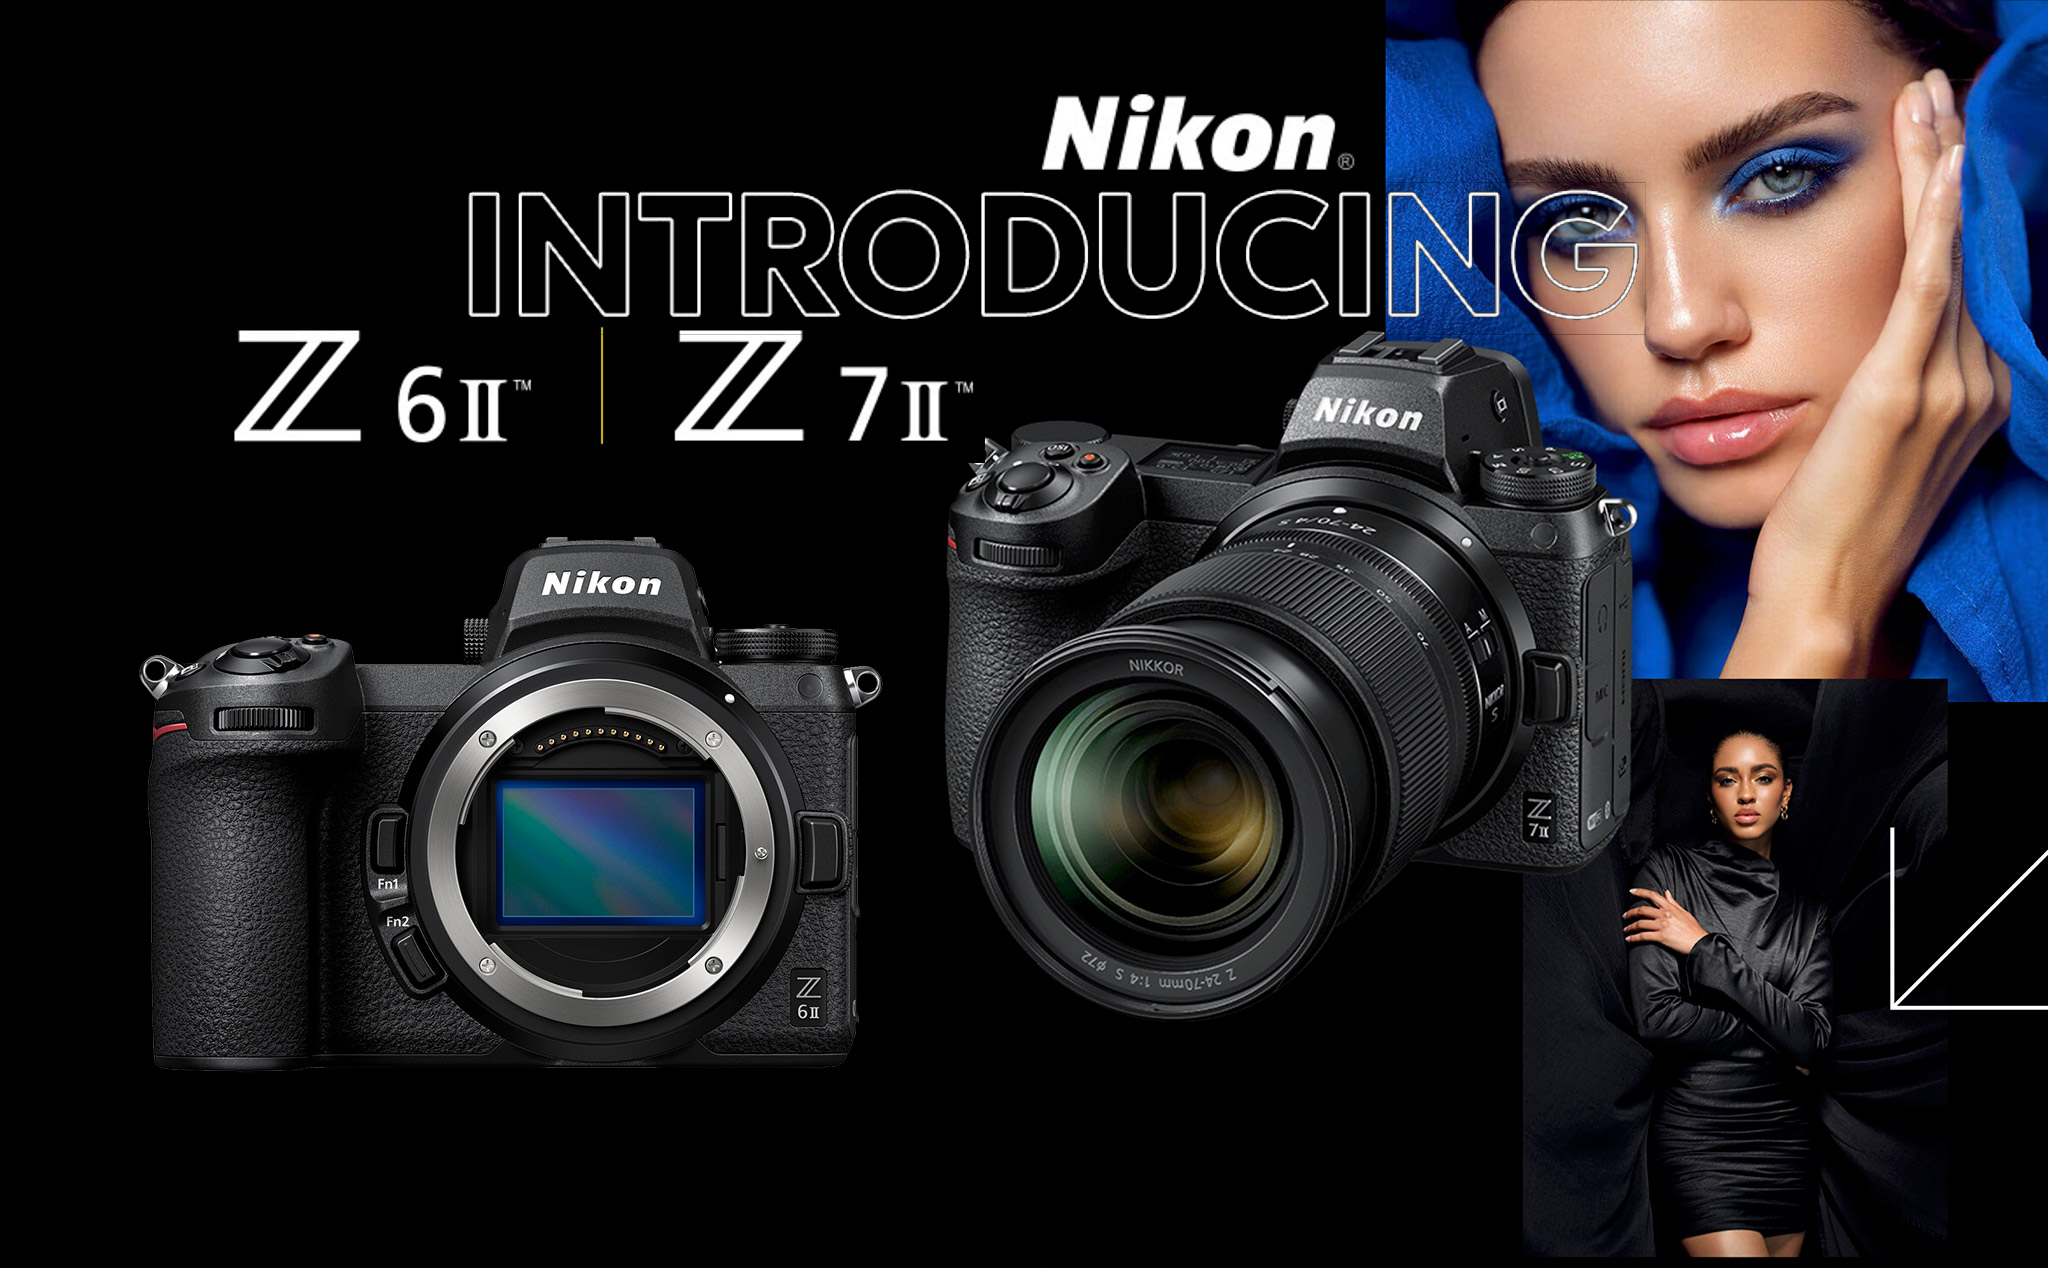 Nikon ra mắt Z 6II/ Z 7II: gấp đôi sức mạnh, video 4K 60p, thêm 1 khe thẻ nhớ SD UHS-II tiện dụng